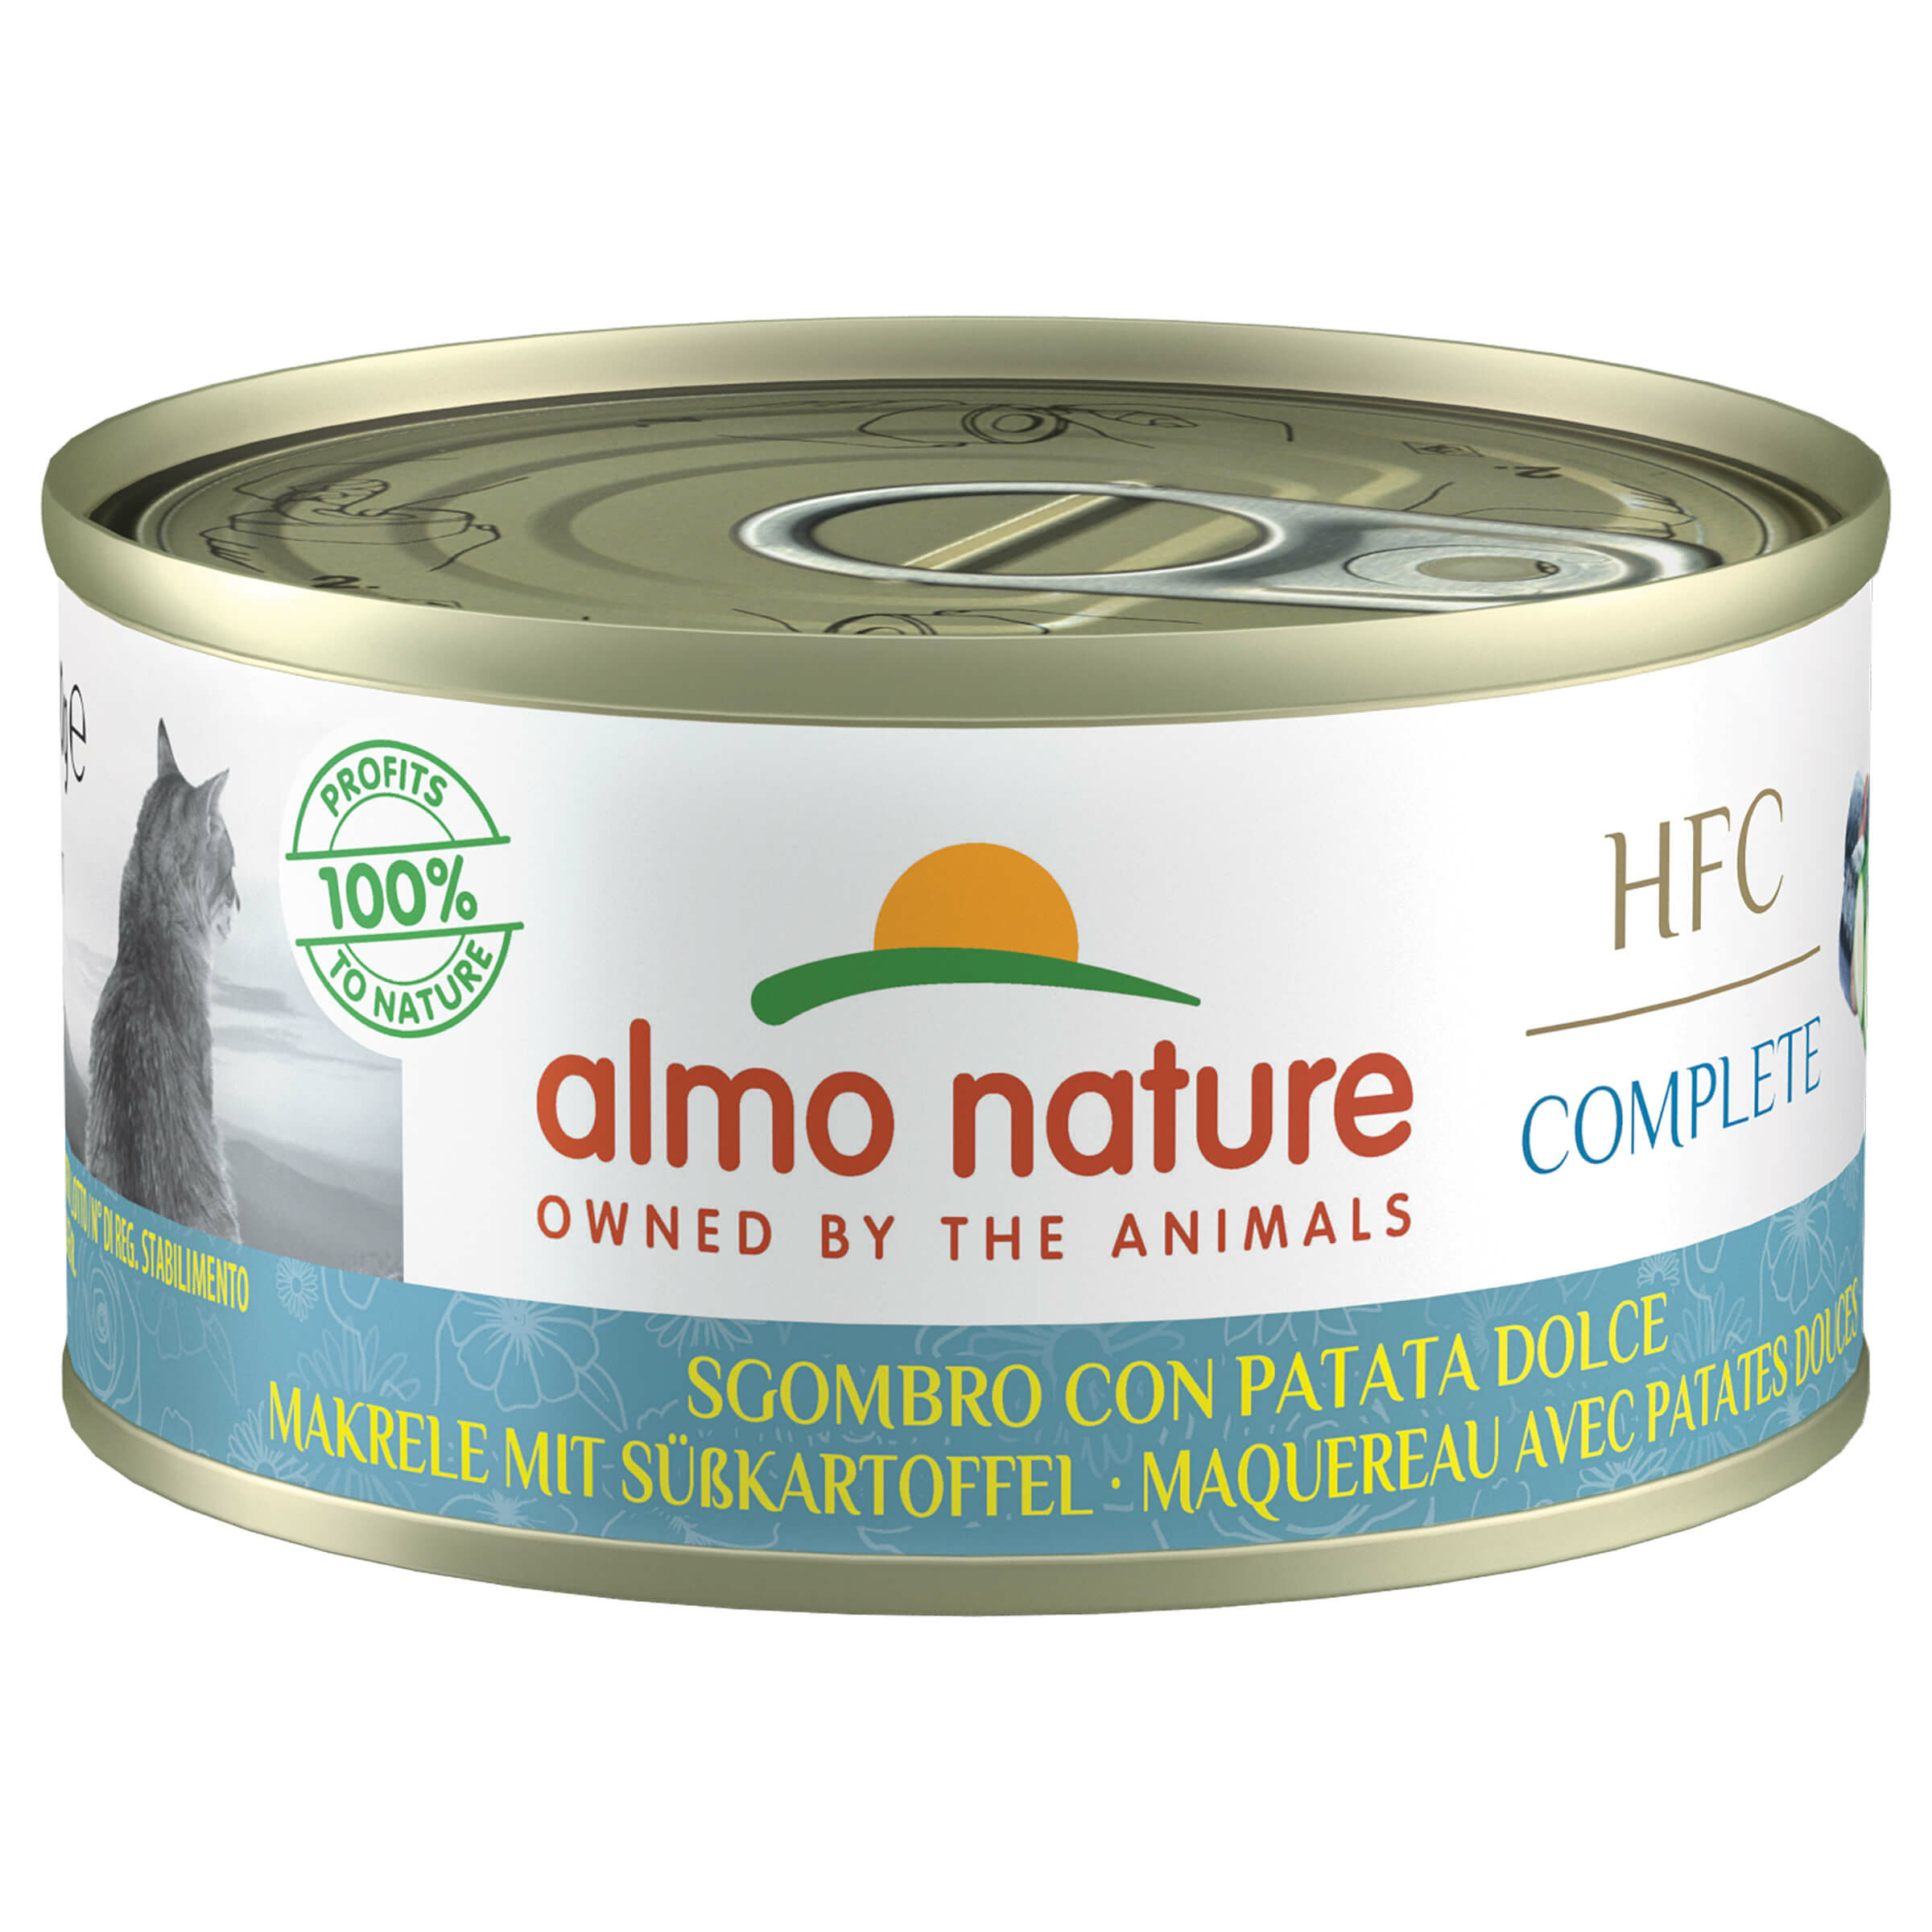 Almo Nature HFC Complete Nourriture pour chats HFC Maquereau avec Patate douce 24x70g